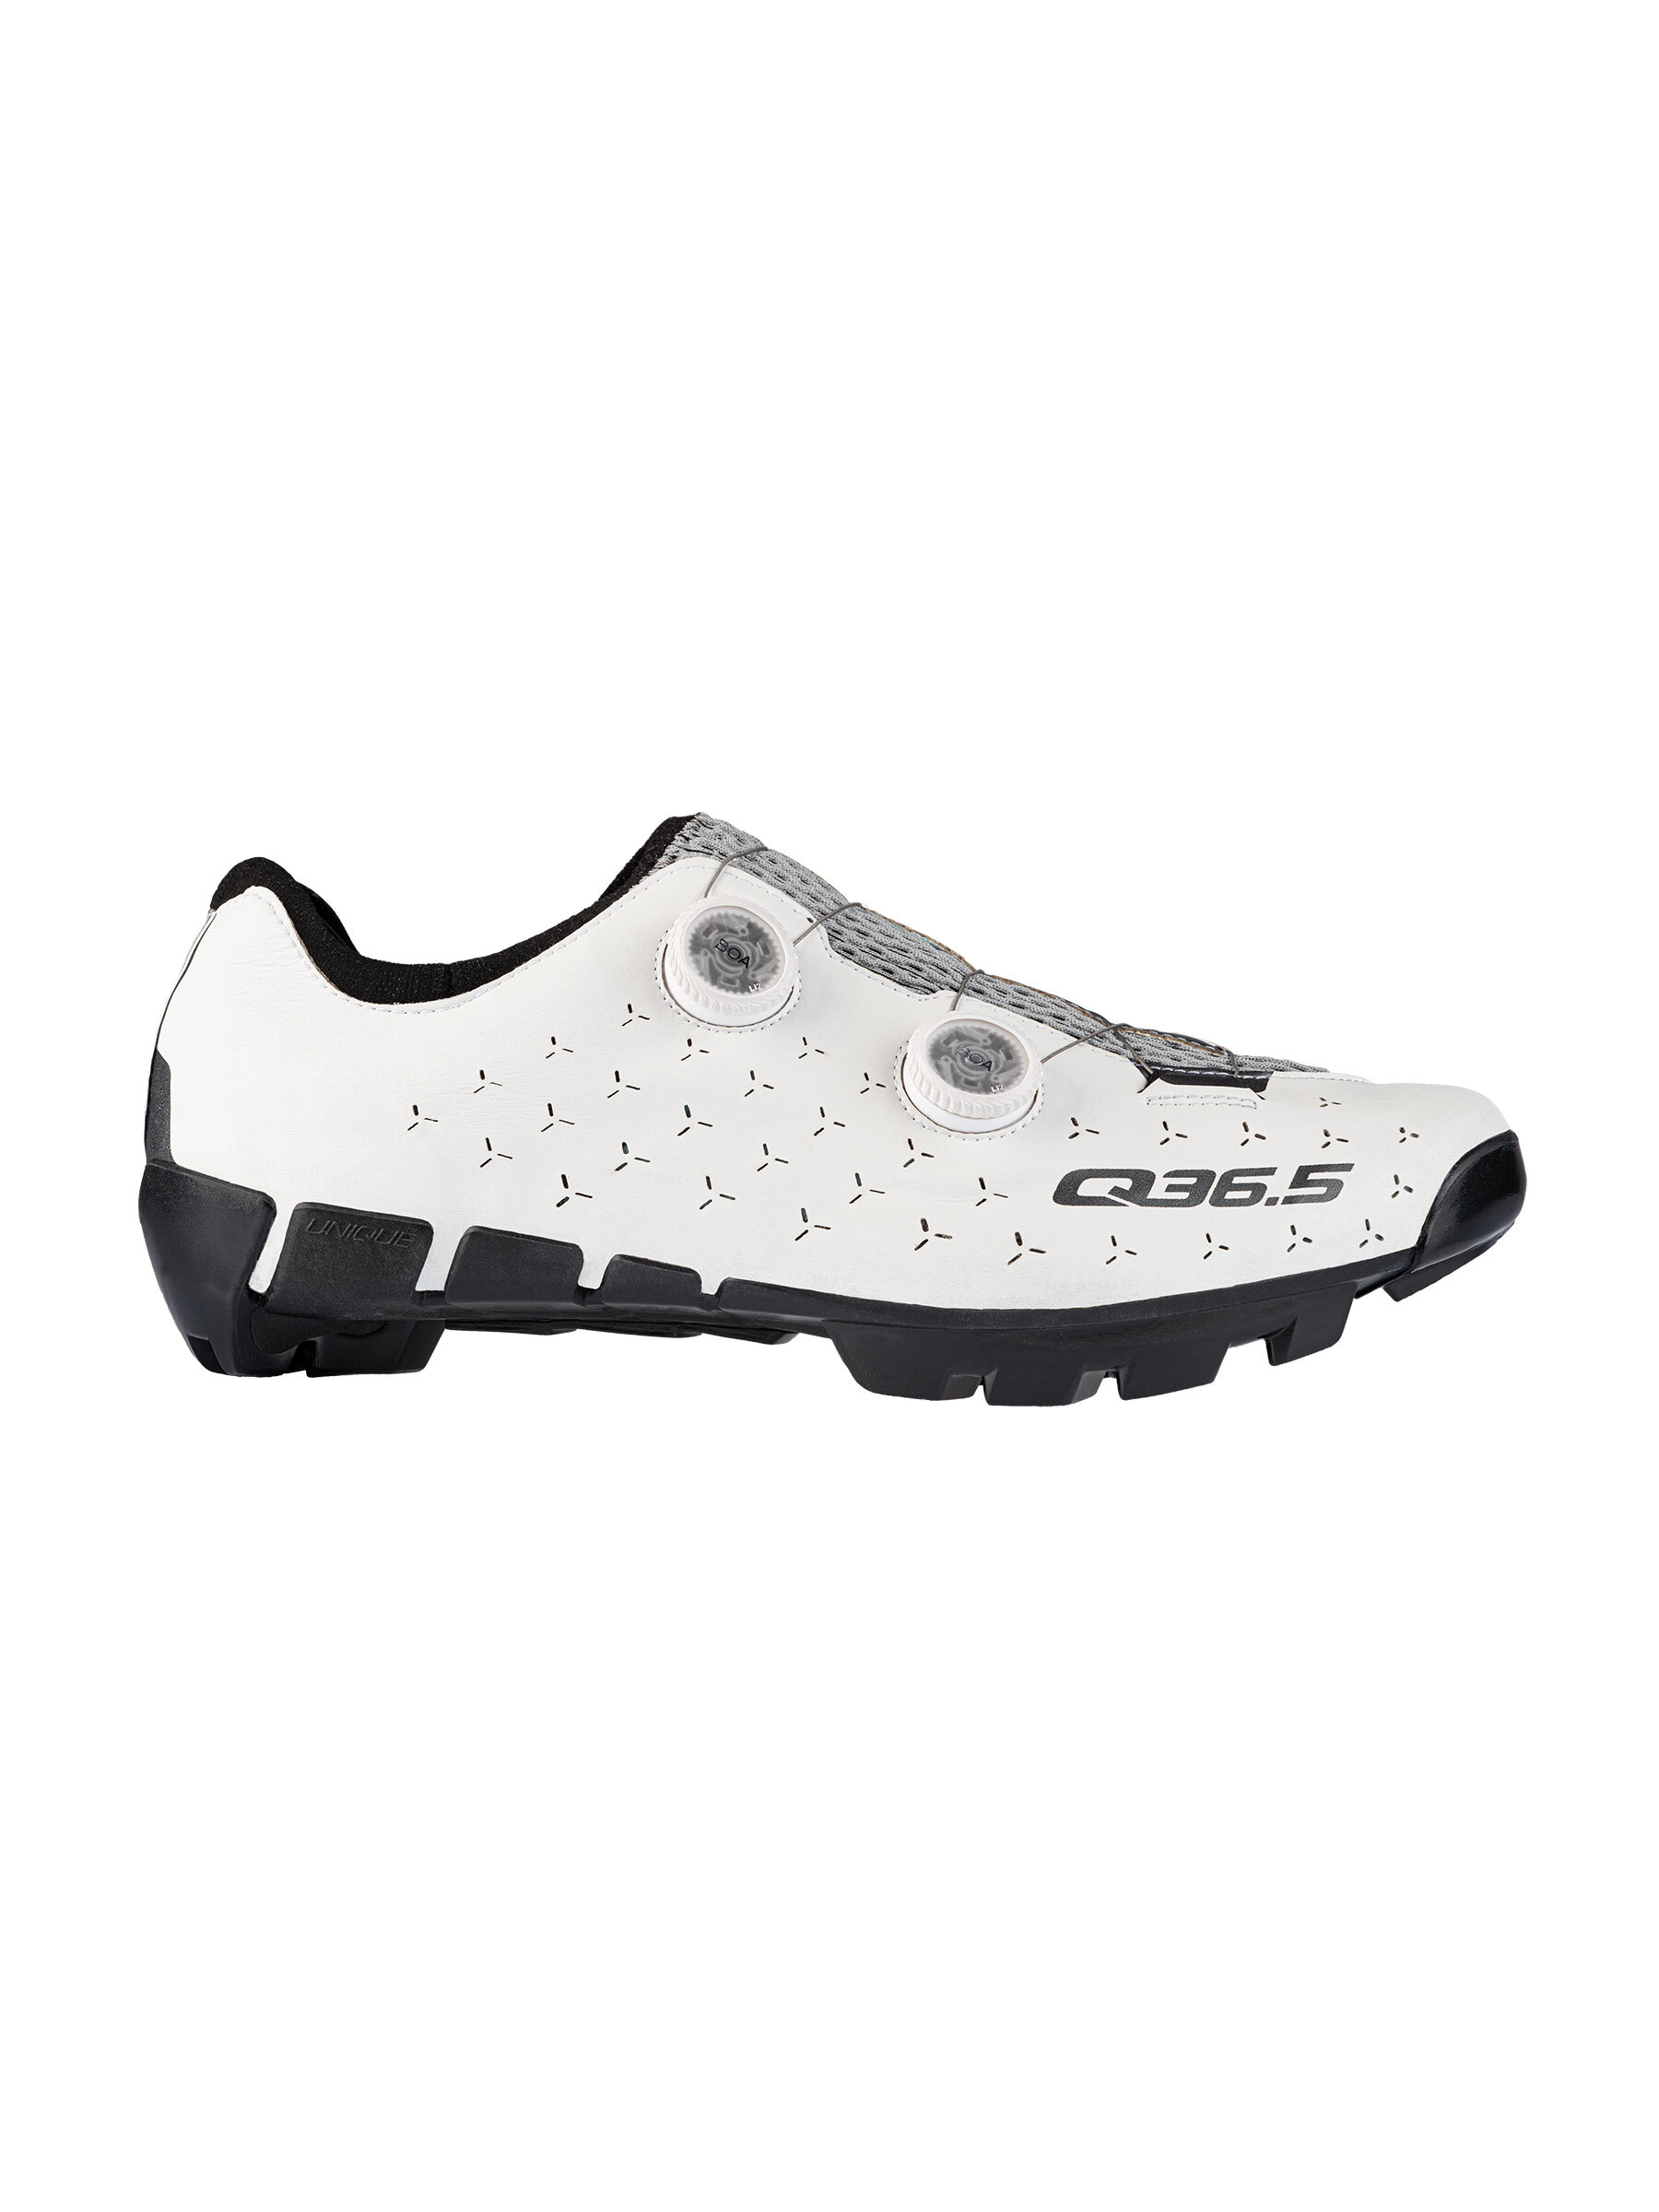 Mountain bike shoes & gravel bike shoes for men & women, silver • Q36.5